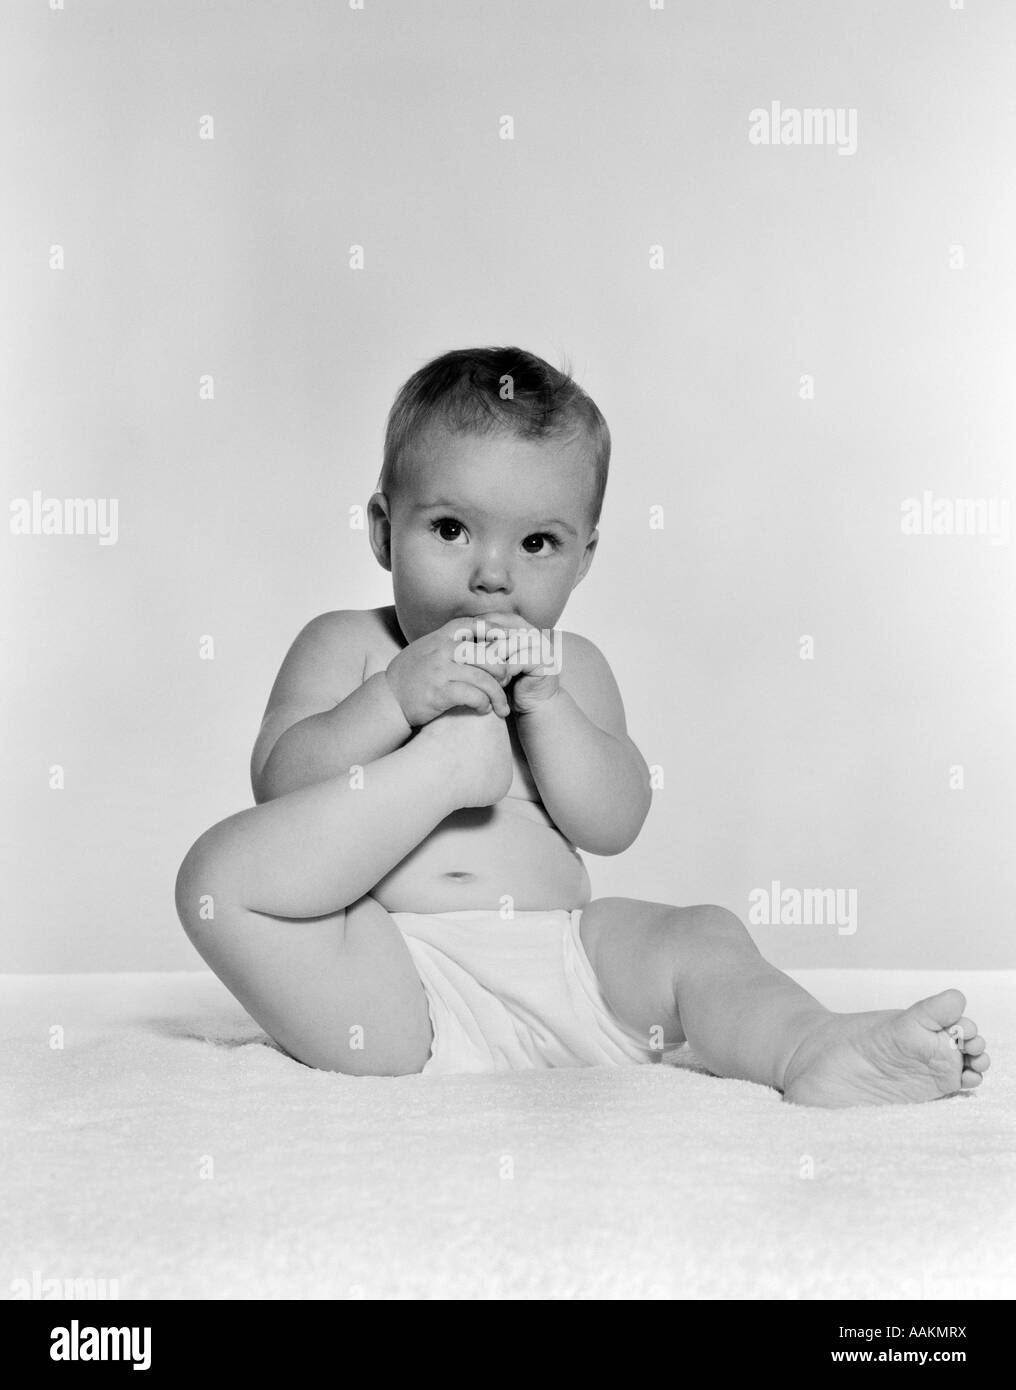 1950S 1960S BABY SITZEND AUF DECKE BRINGEN FUß IN DEN MUND Stockfoto